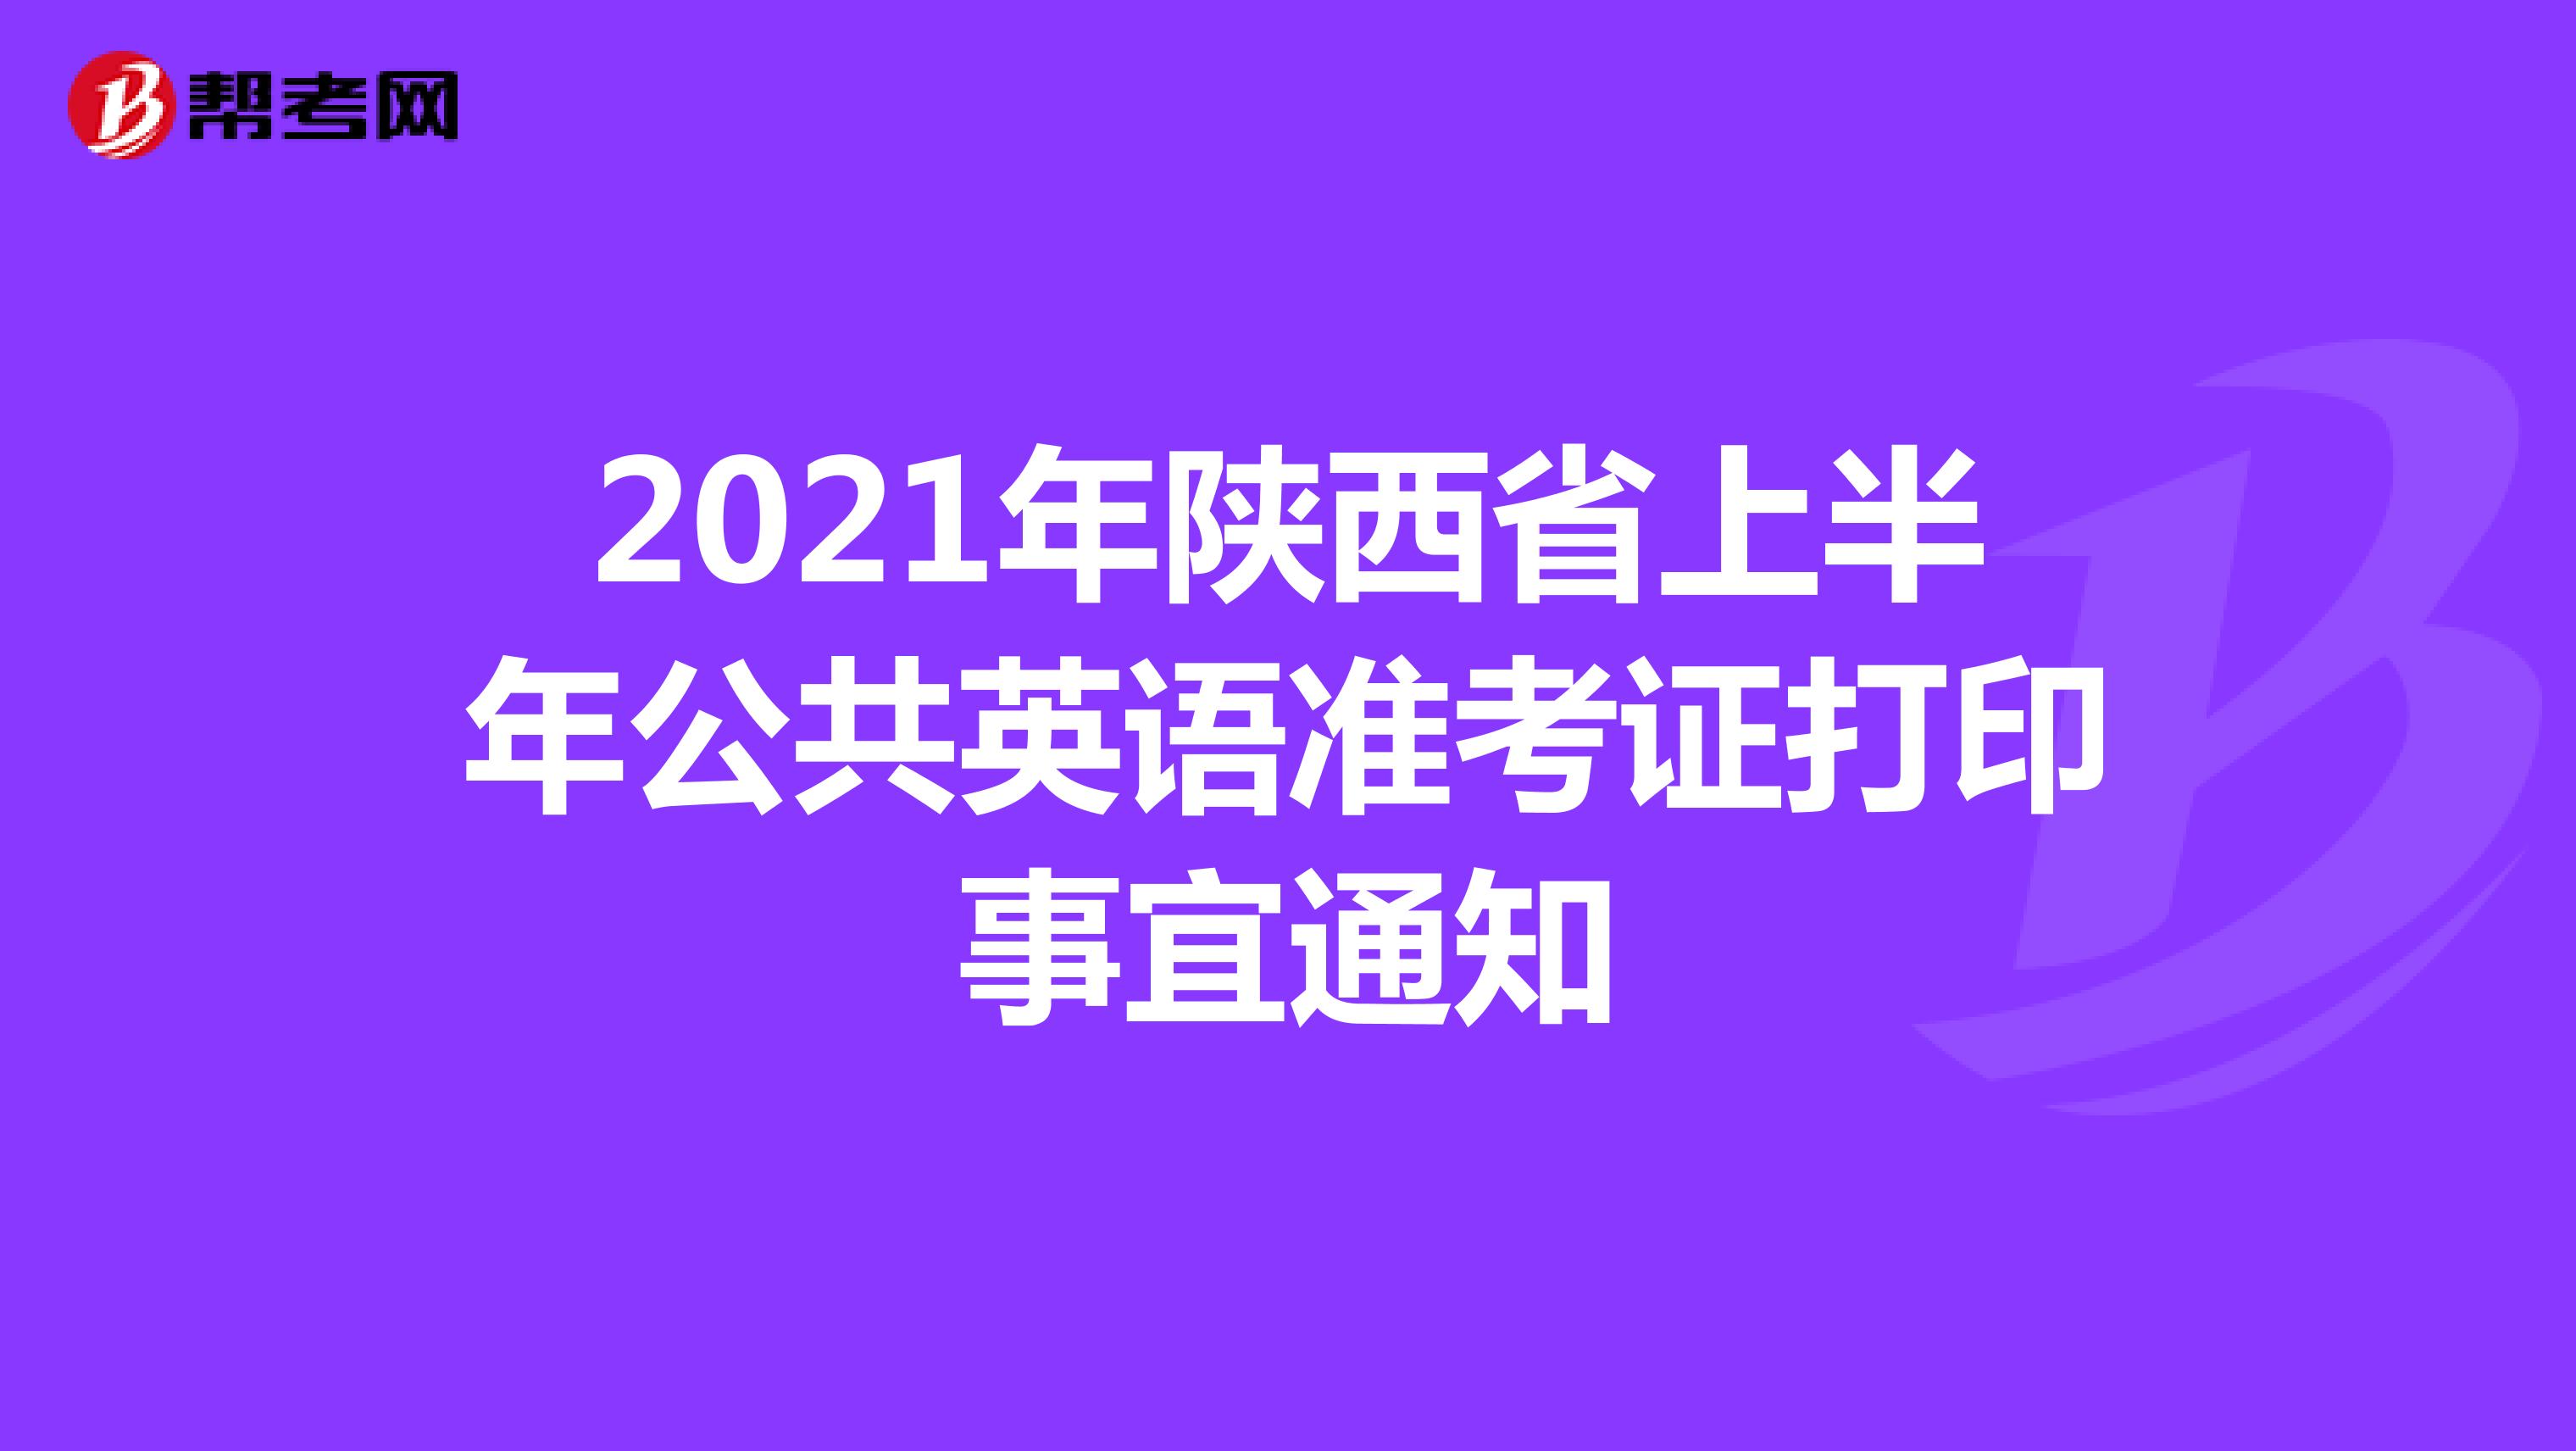 2021年陕西省上半年公共英语准考证打印事宜通知